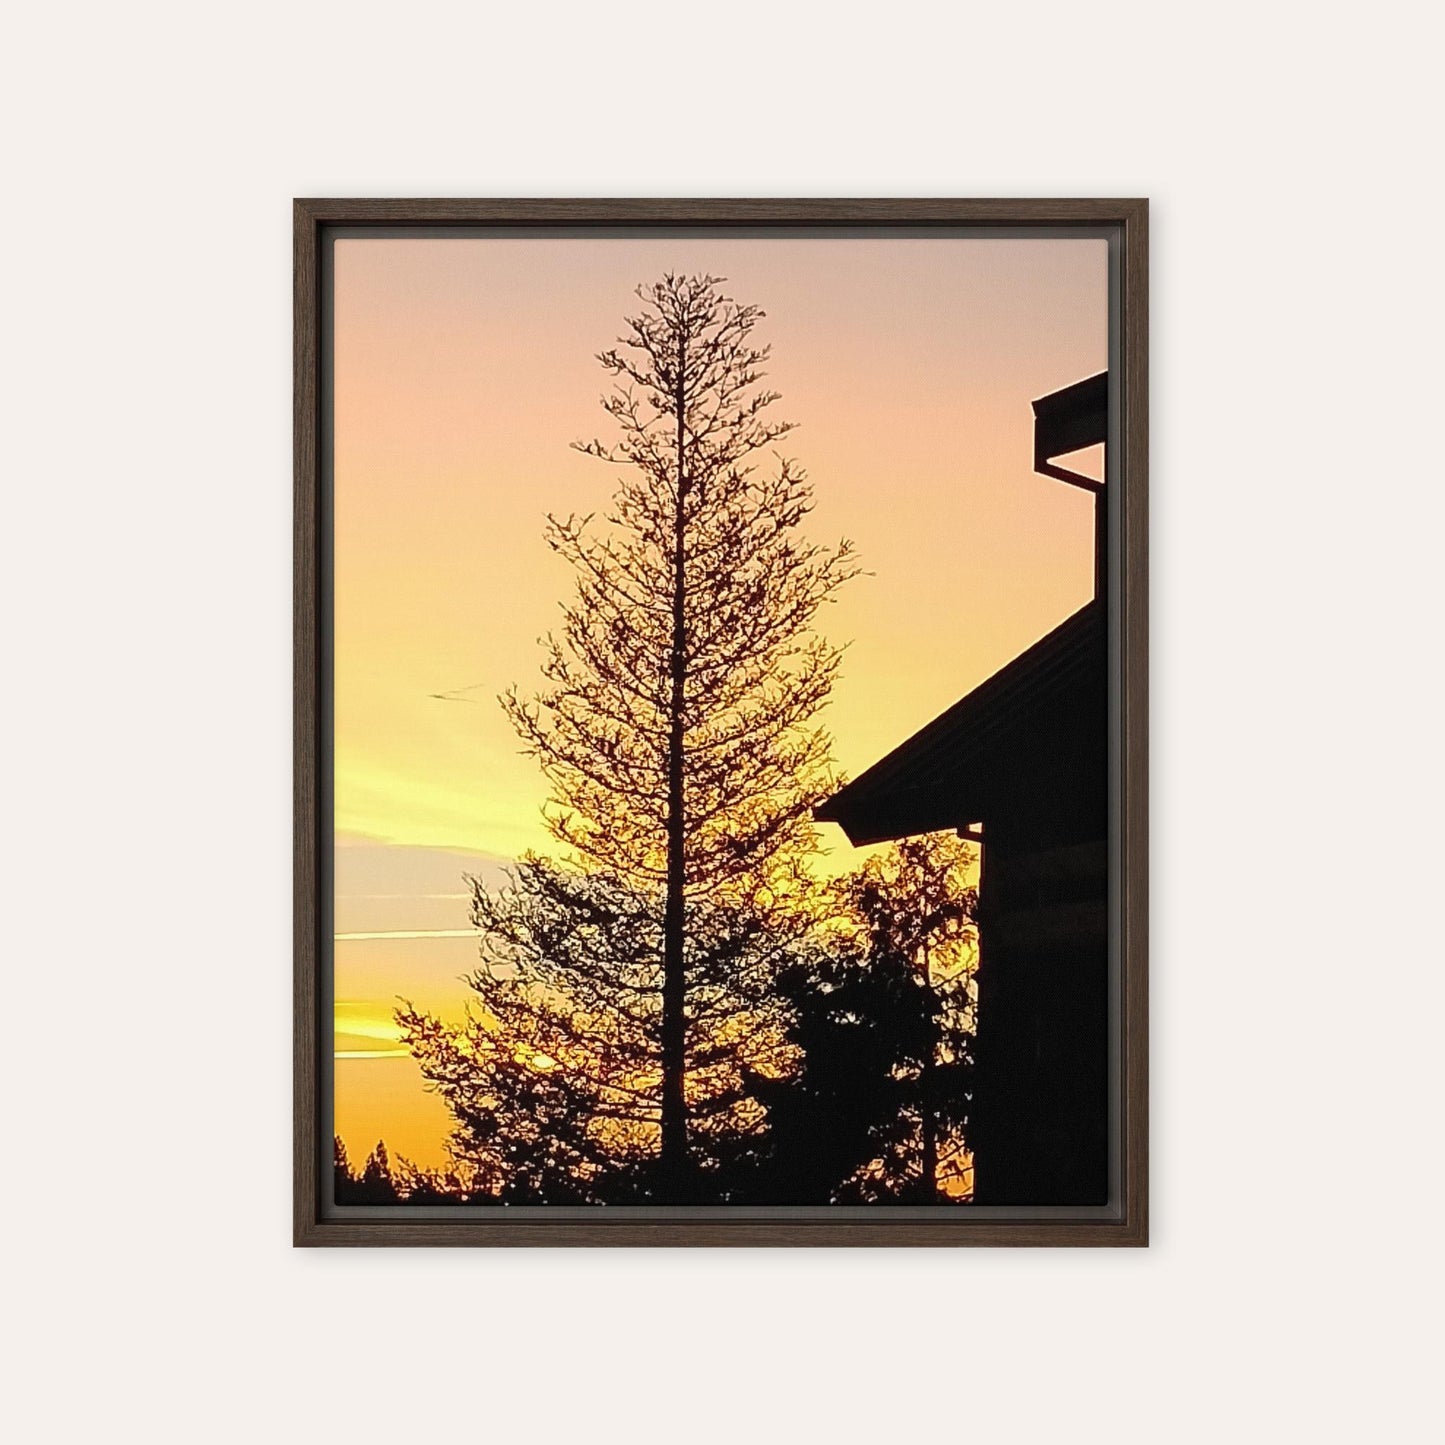 Big Pine Framed Print